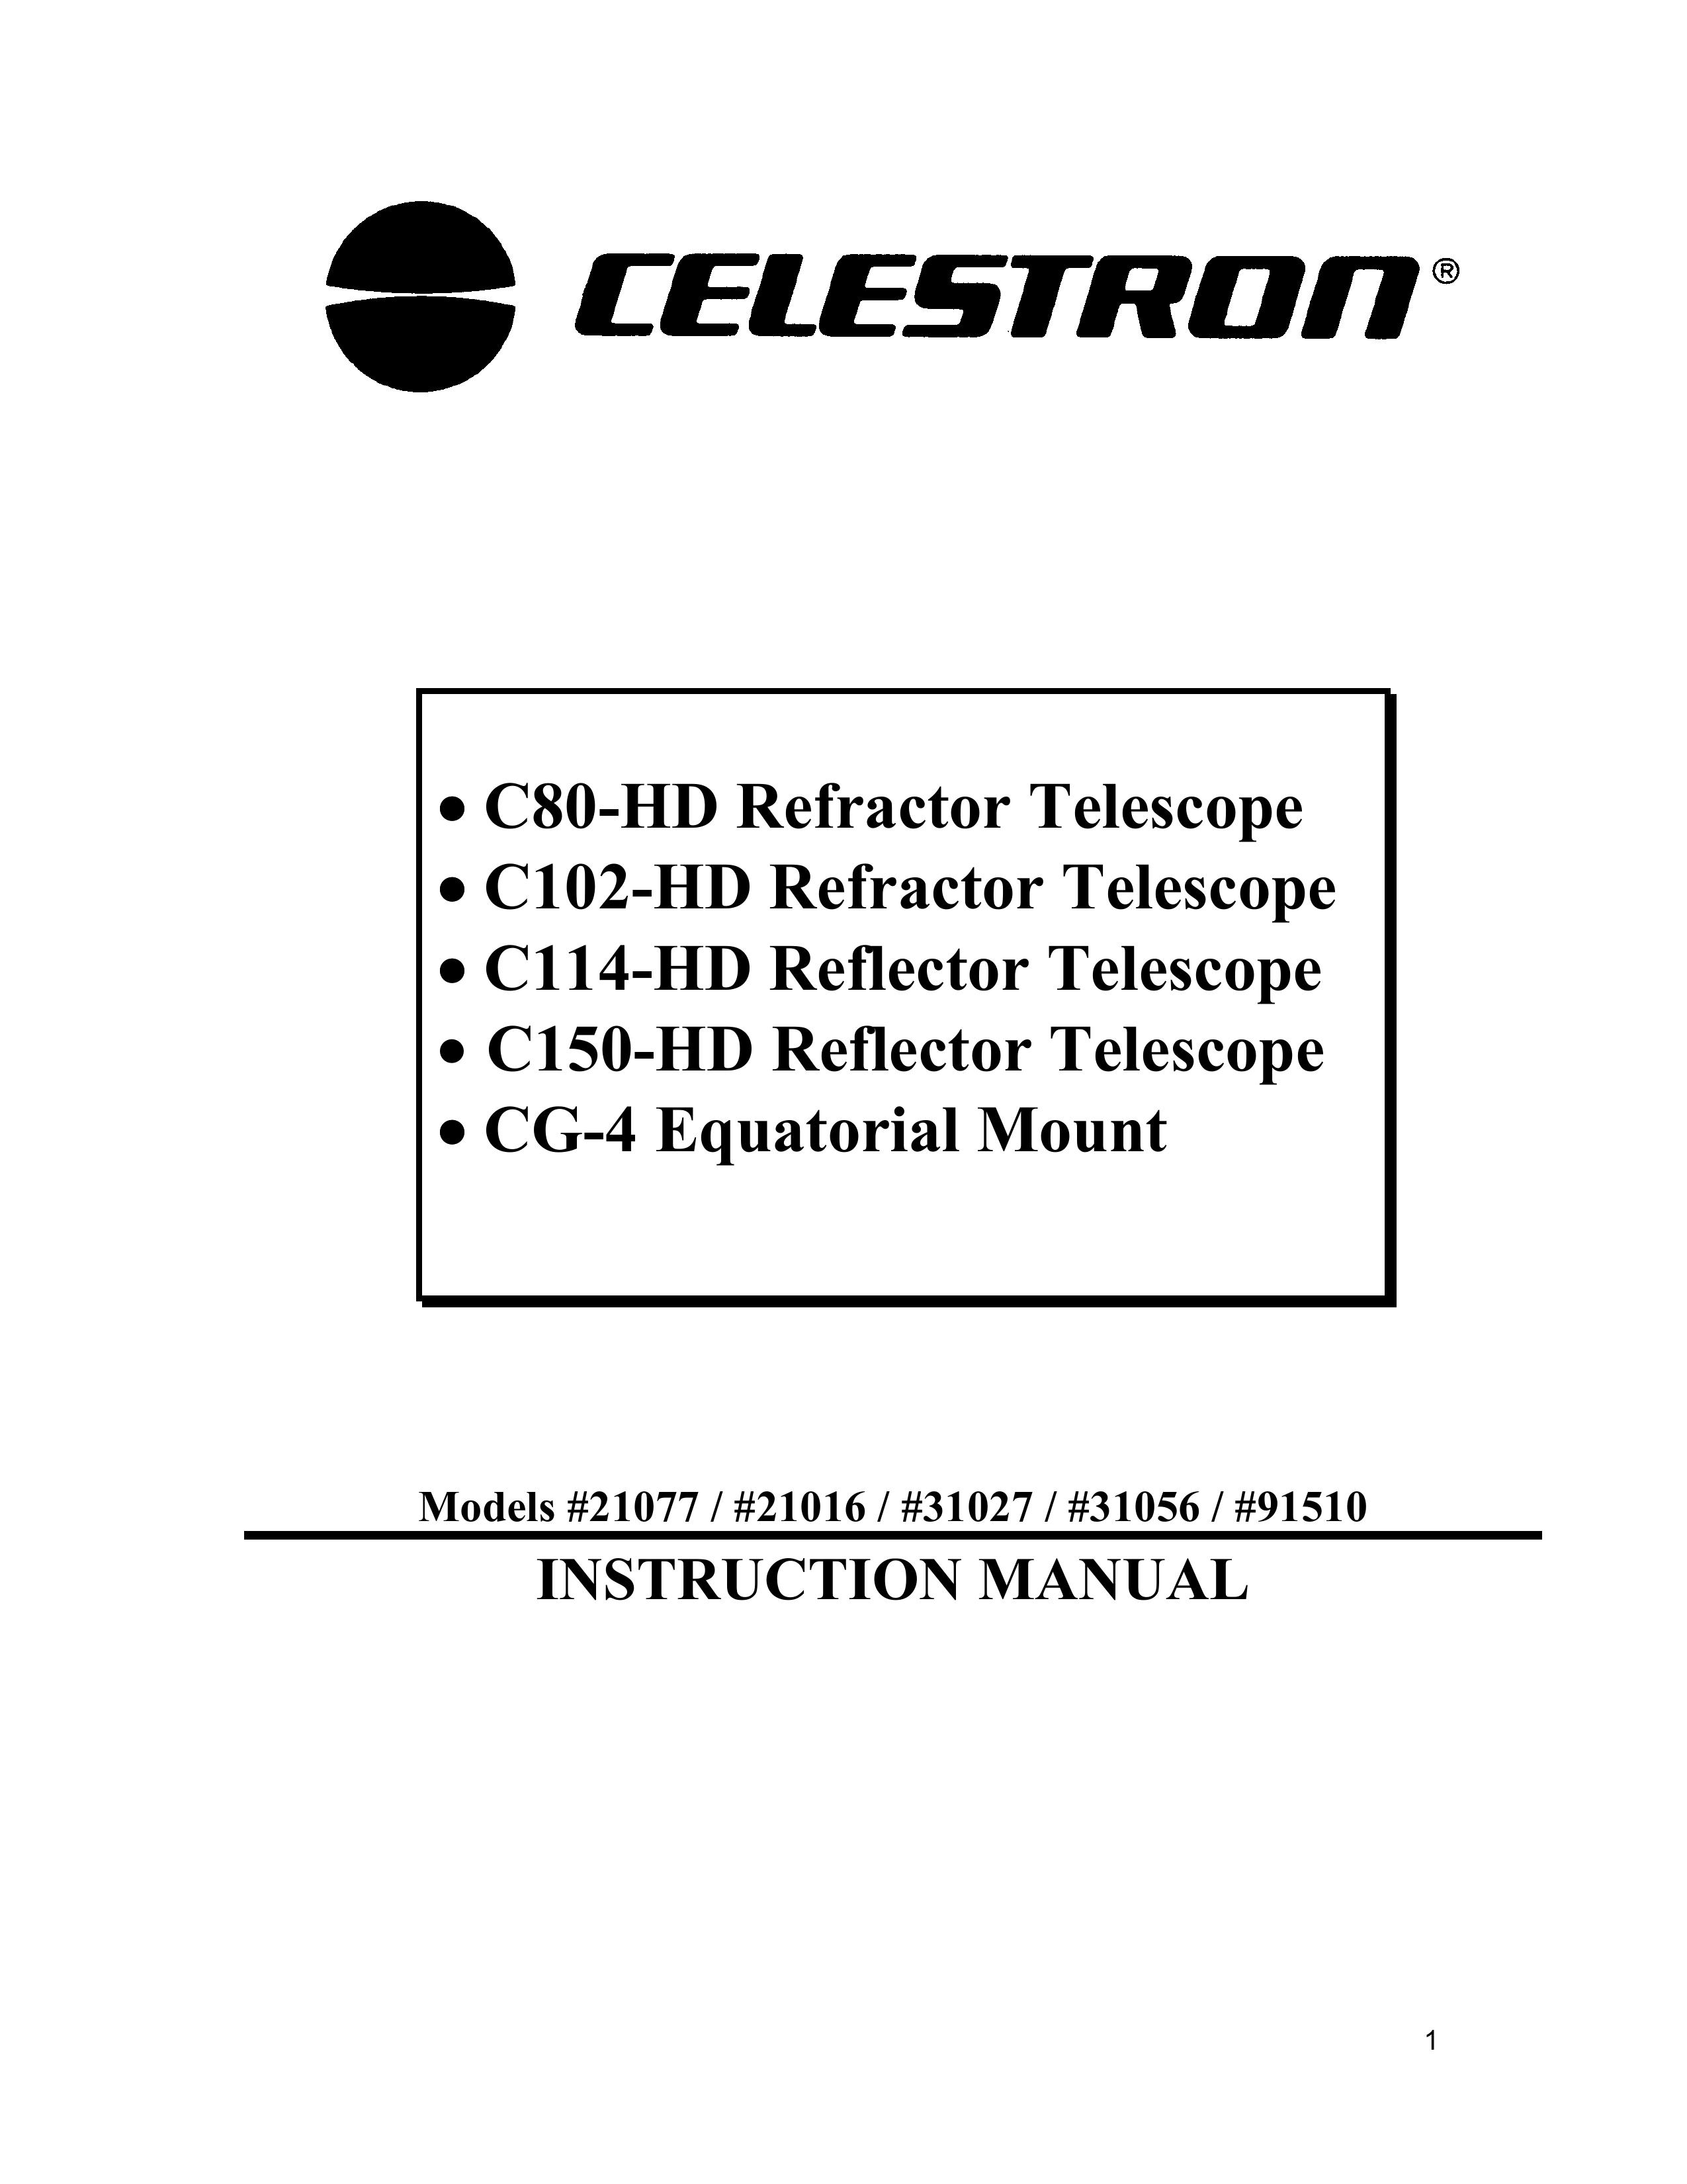 Celestron 21016 Telescope User Manual